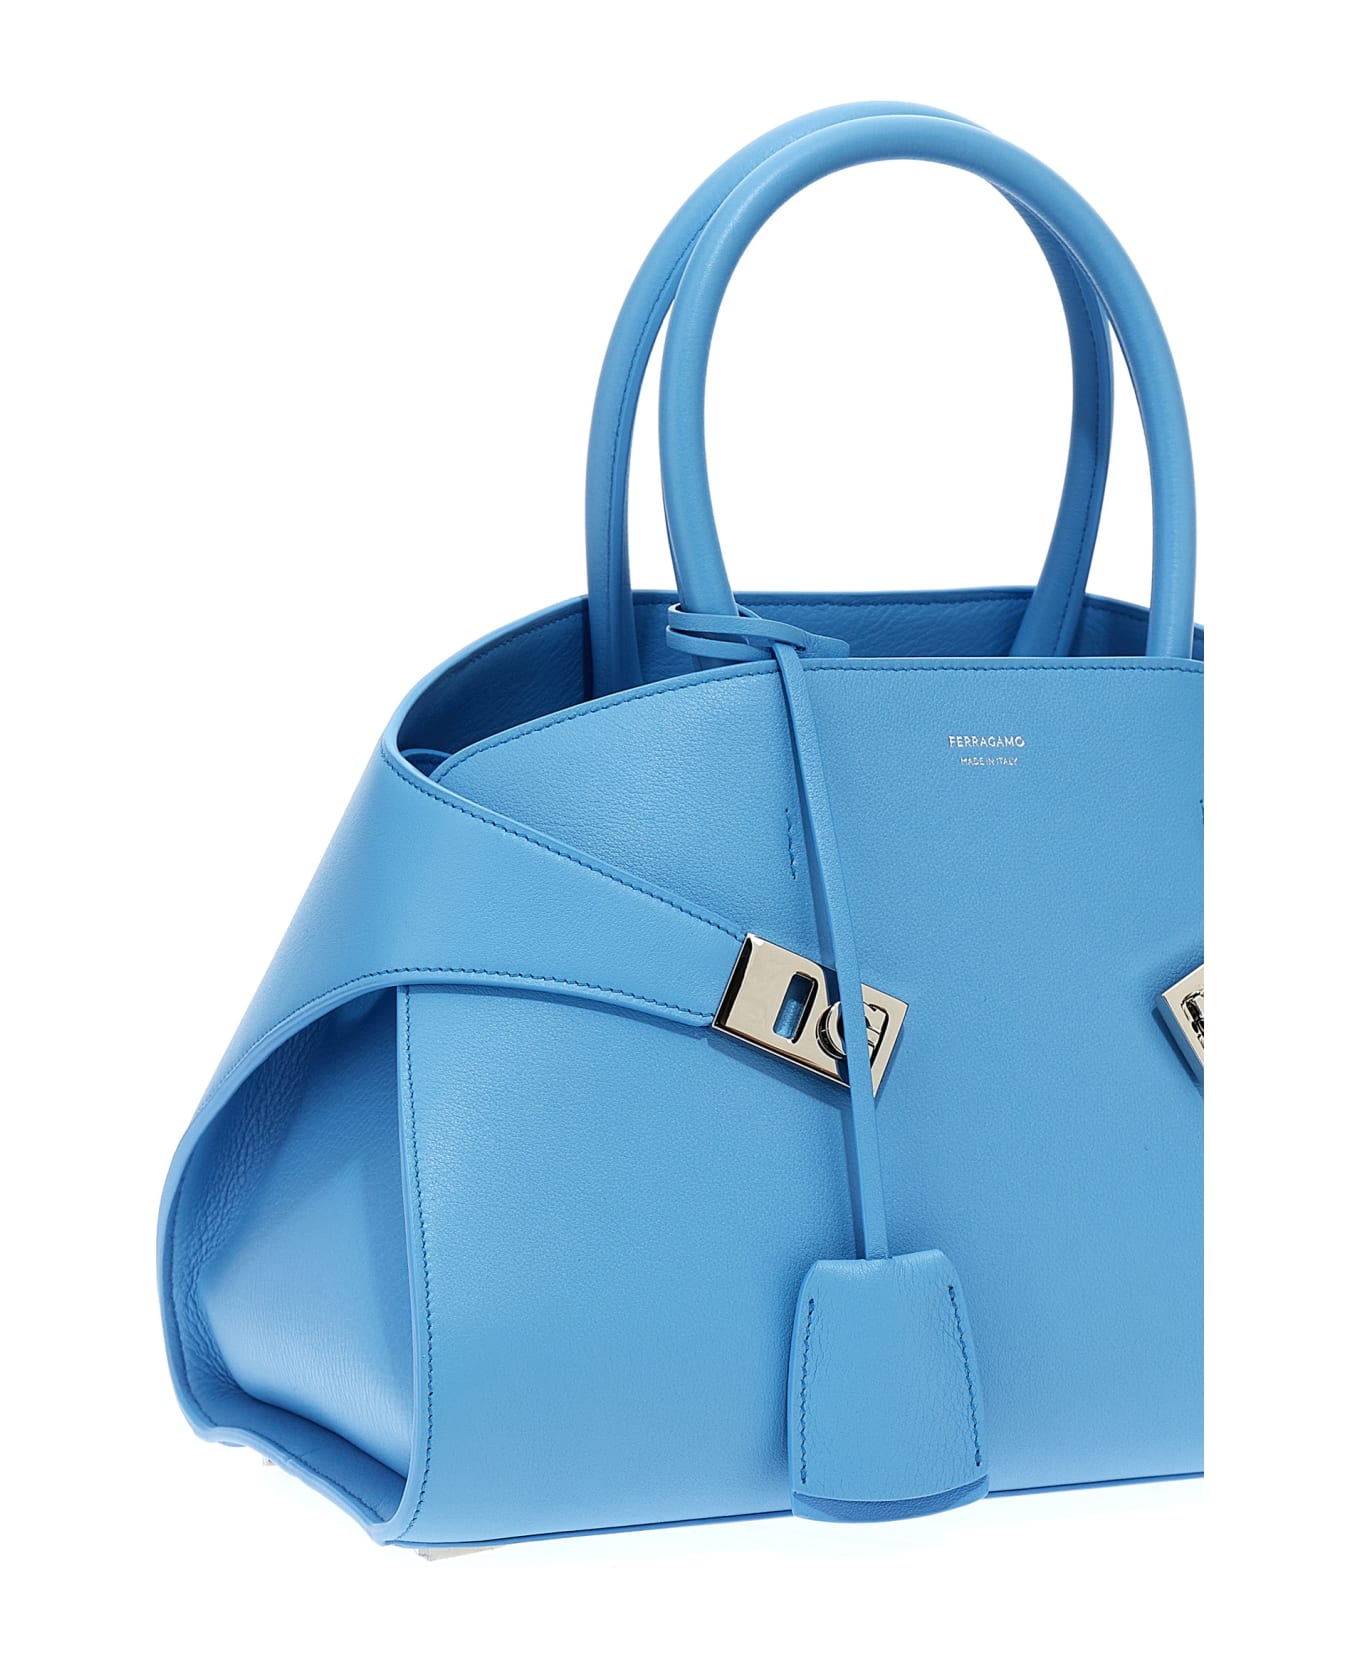 Ferragamo 'hug S' Handbag - Light Blue トートバッグ